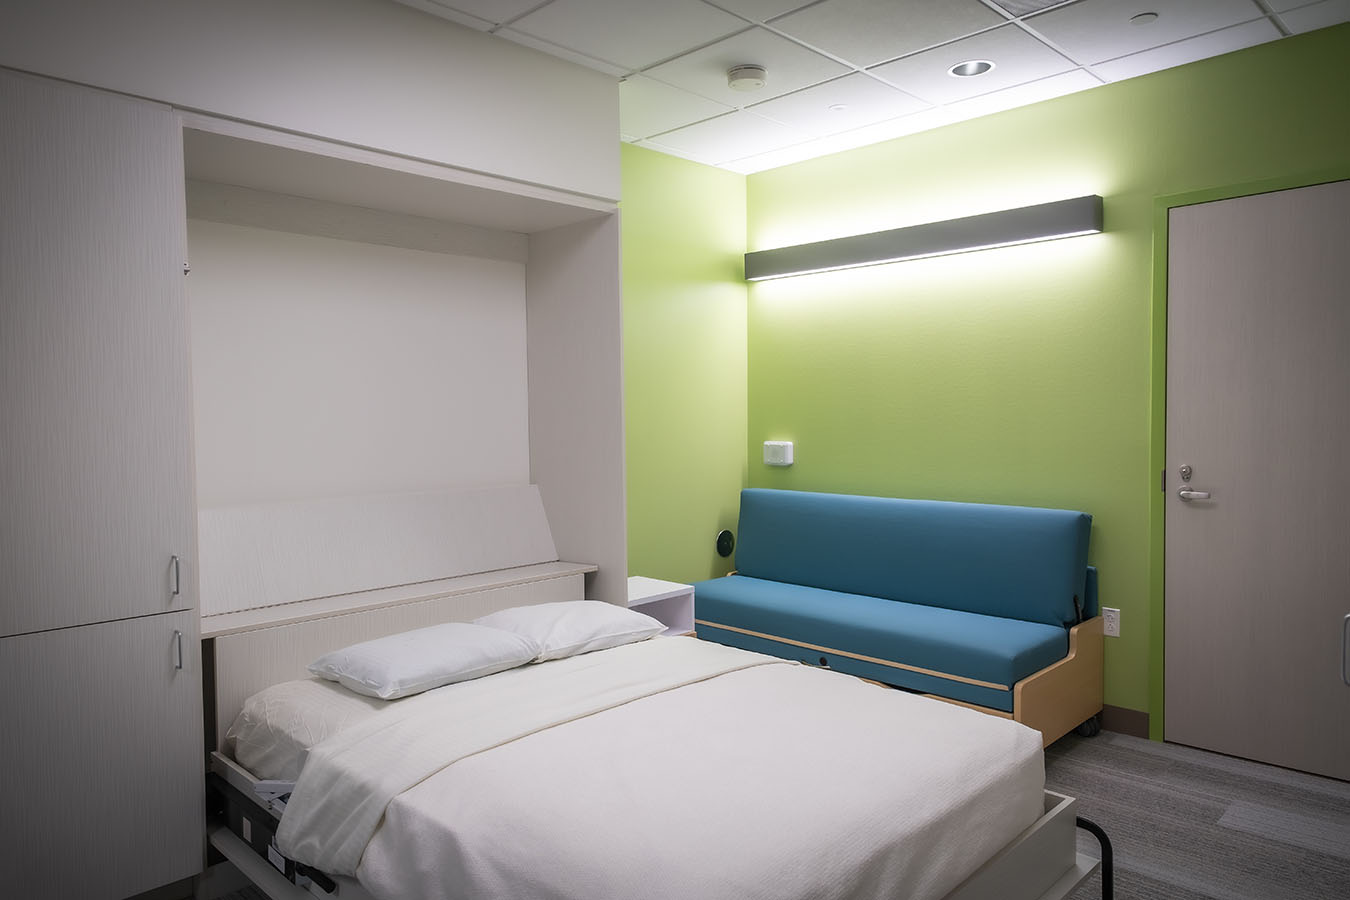 Sleep Center Patient Room